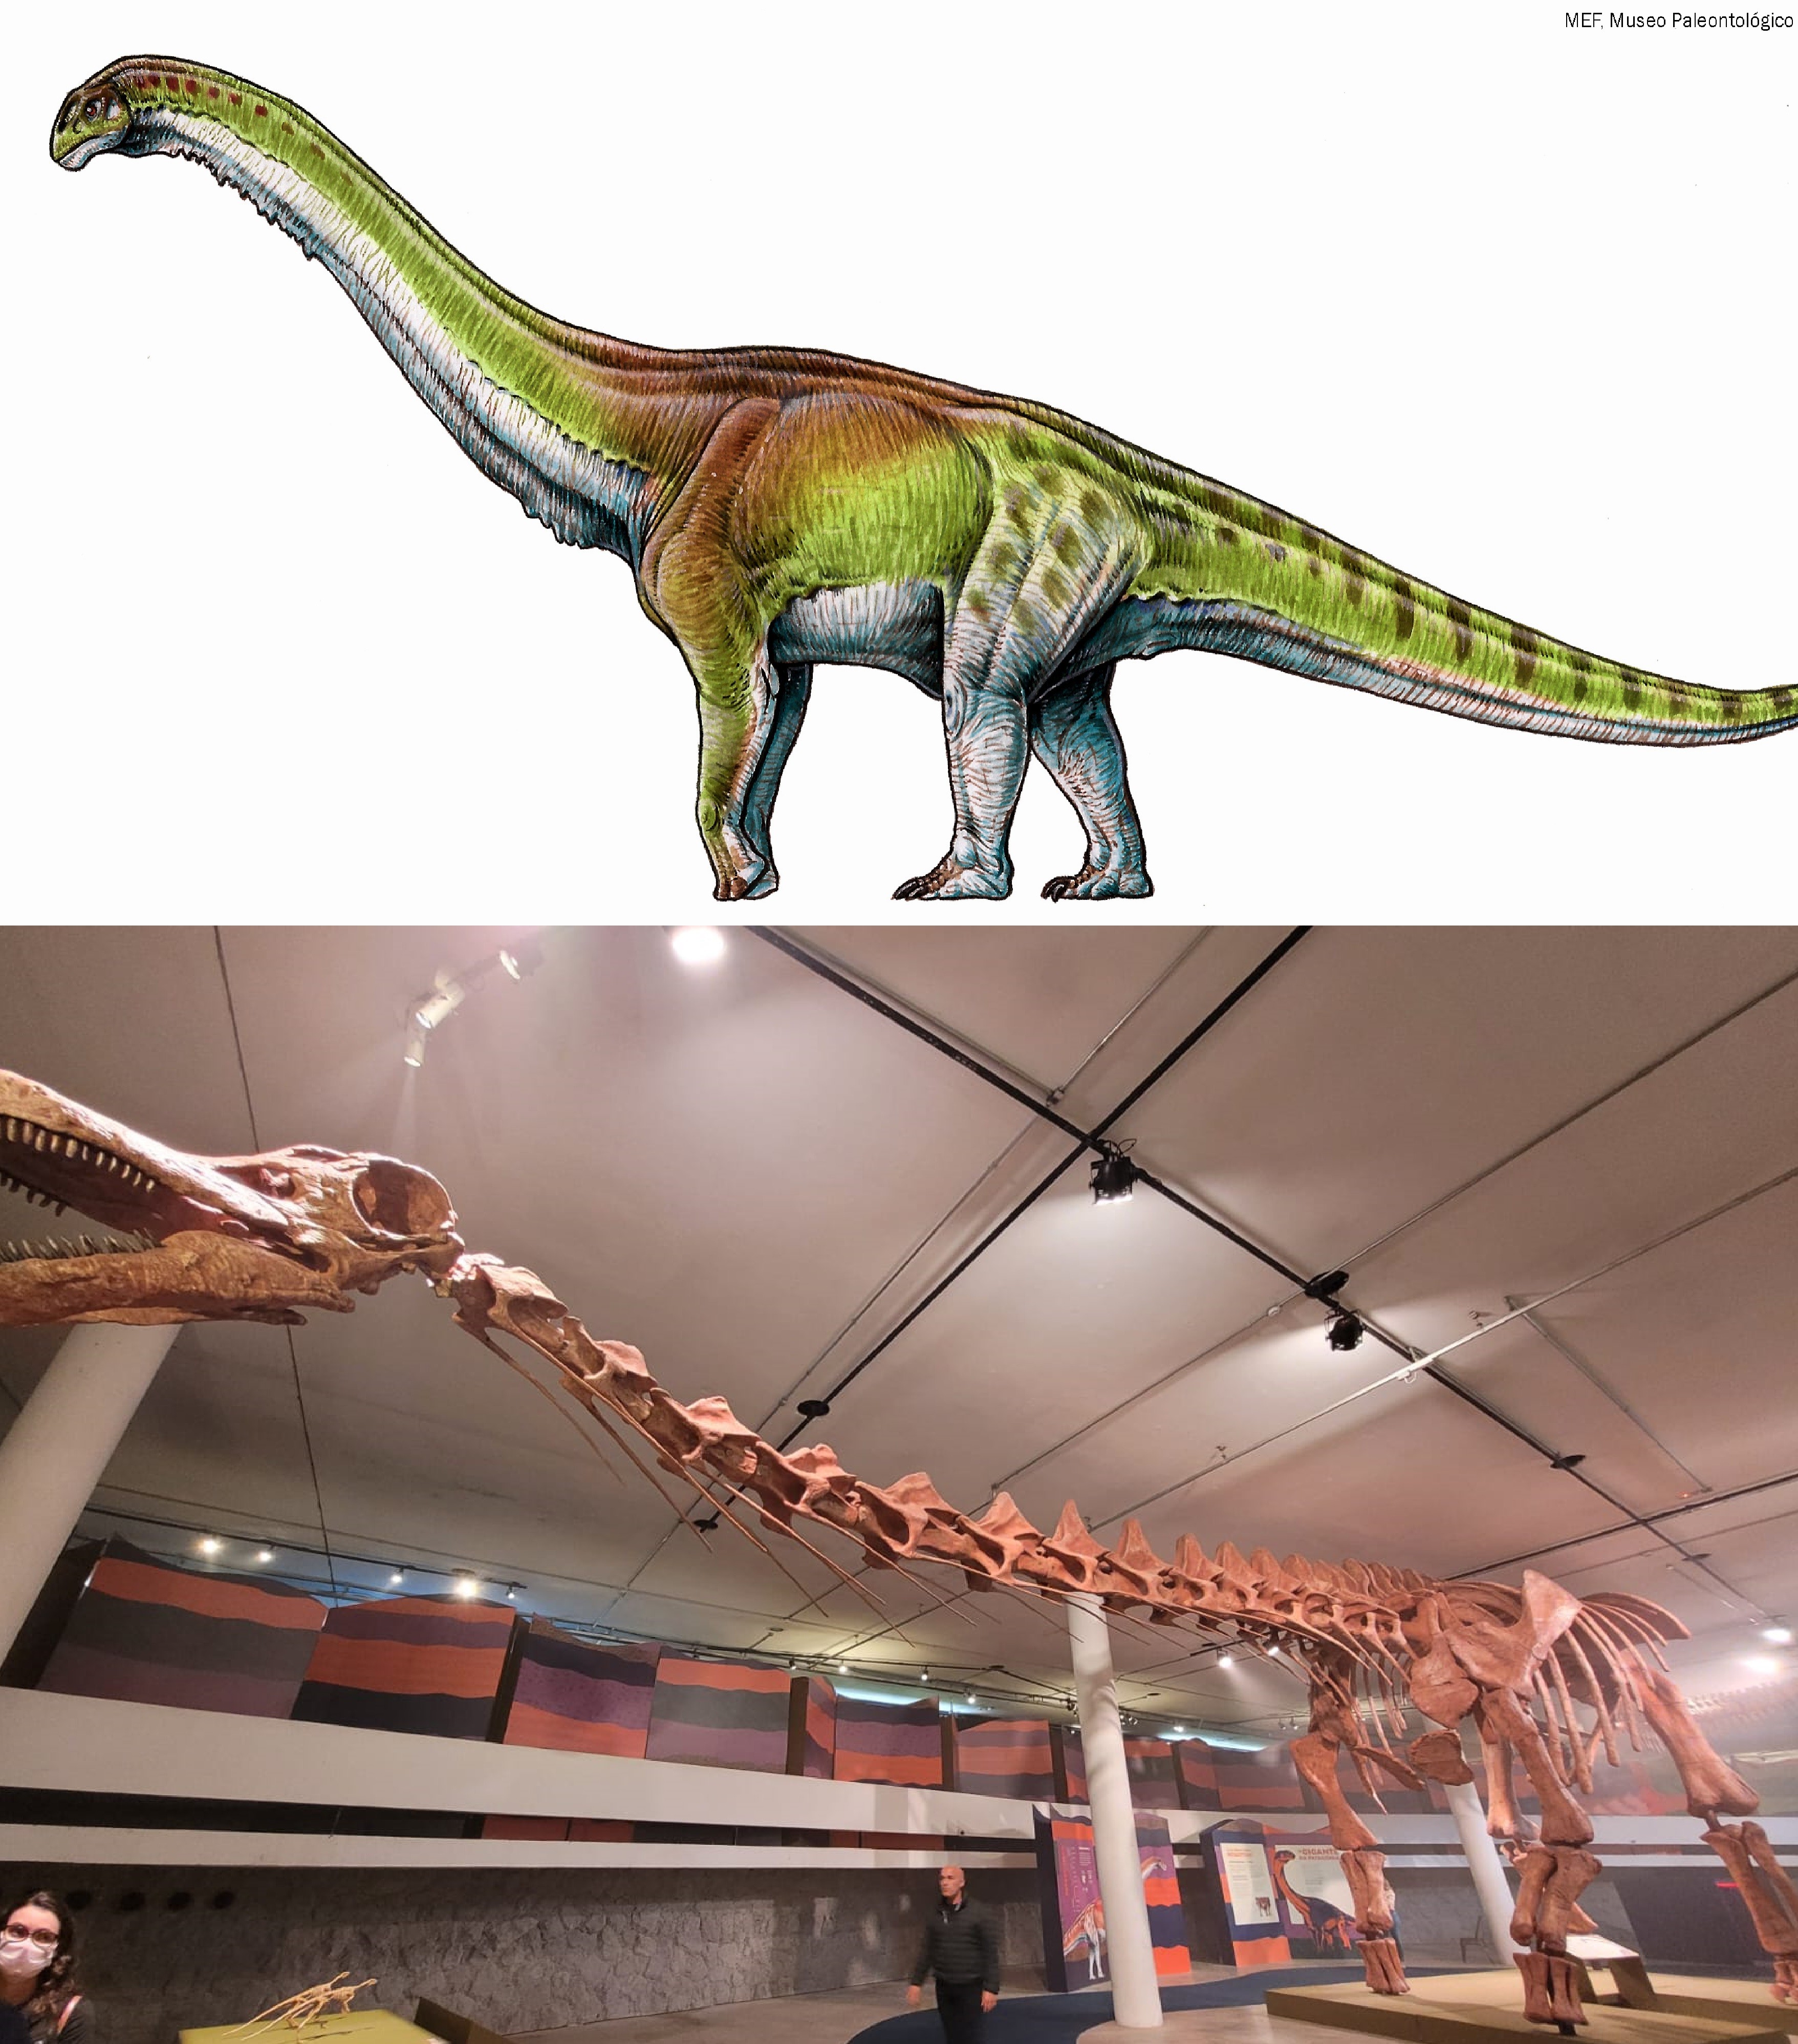 À esquerda uma representação artística de como seria o dinossauro, e à direita a sua réplica na exposição no Pq.Ibirapuera  (Foto: Divulgação/ Midiorama/ Foto: Laura Moraes)